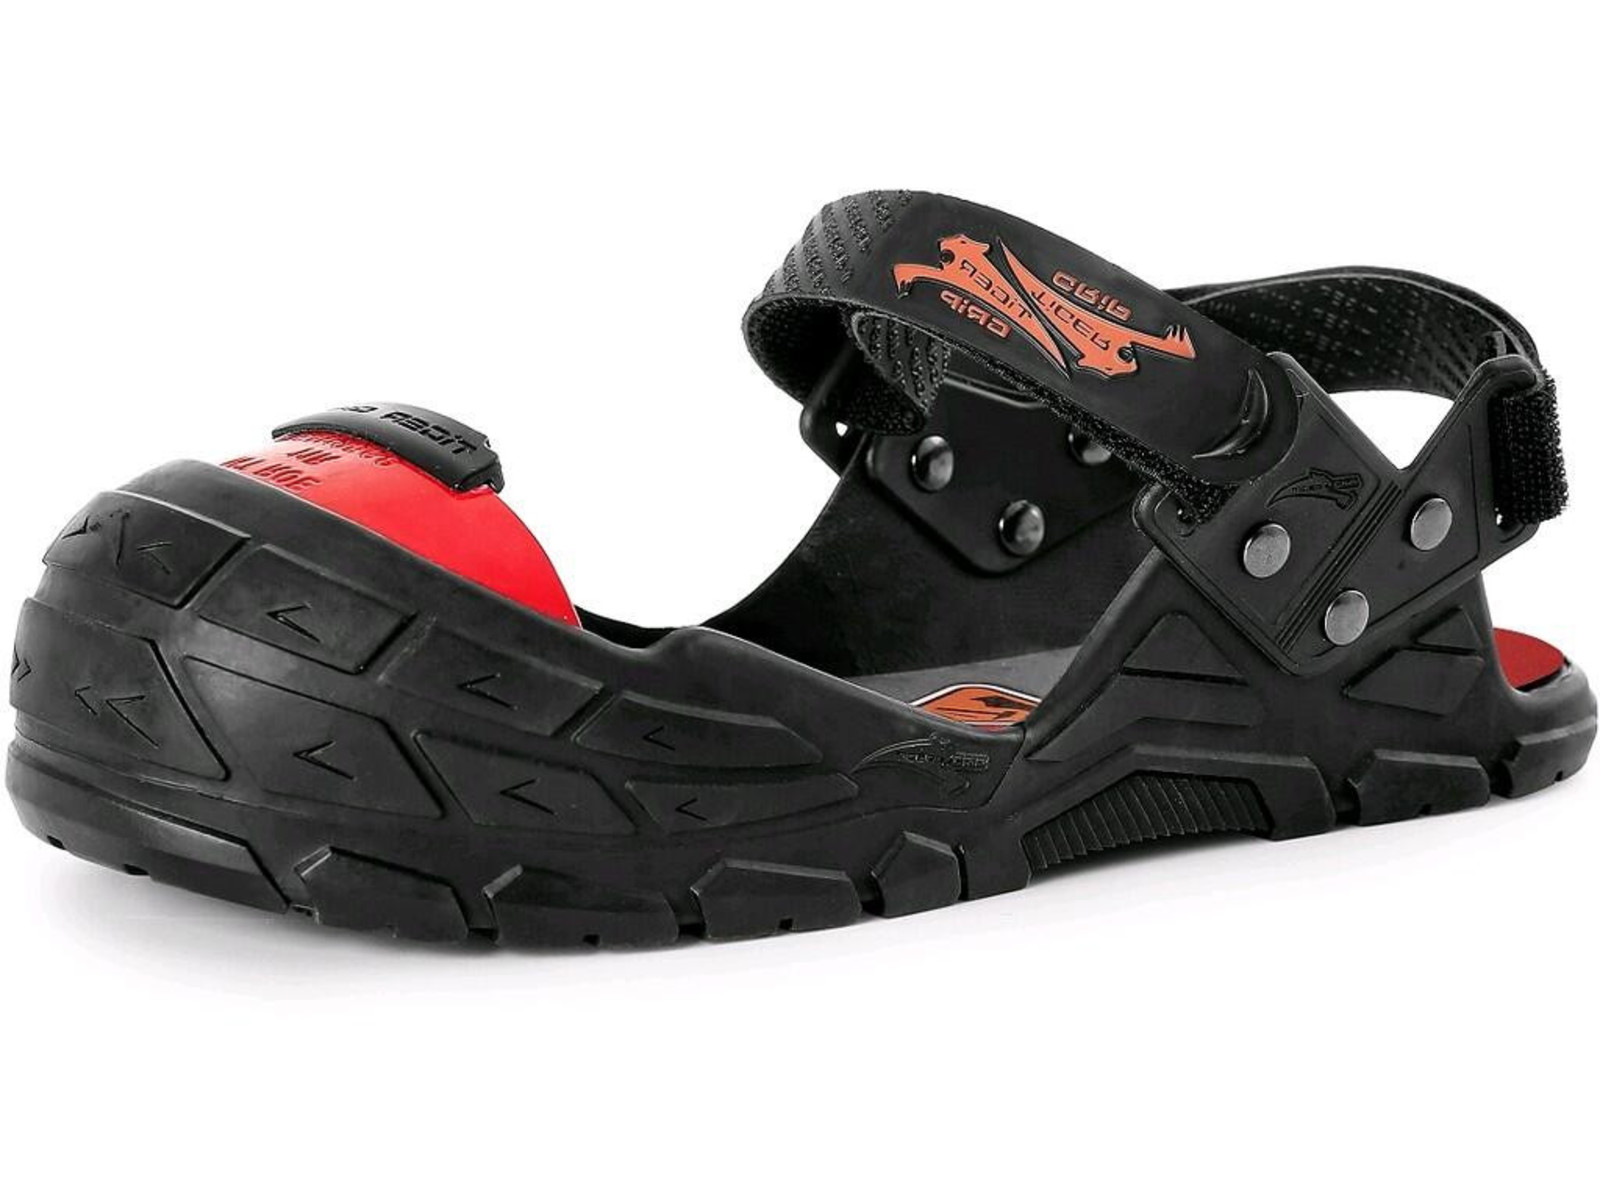 Bezpečnostný návlek na obuv CXS Visitor Integral S1P - veľkosť: L, farba: čierna/červená